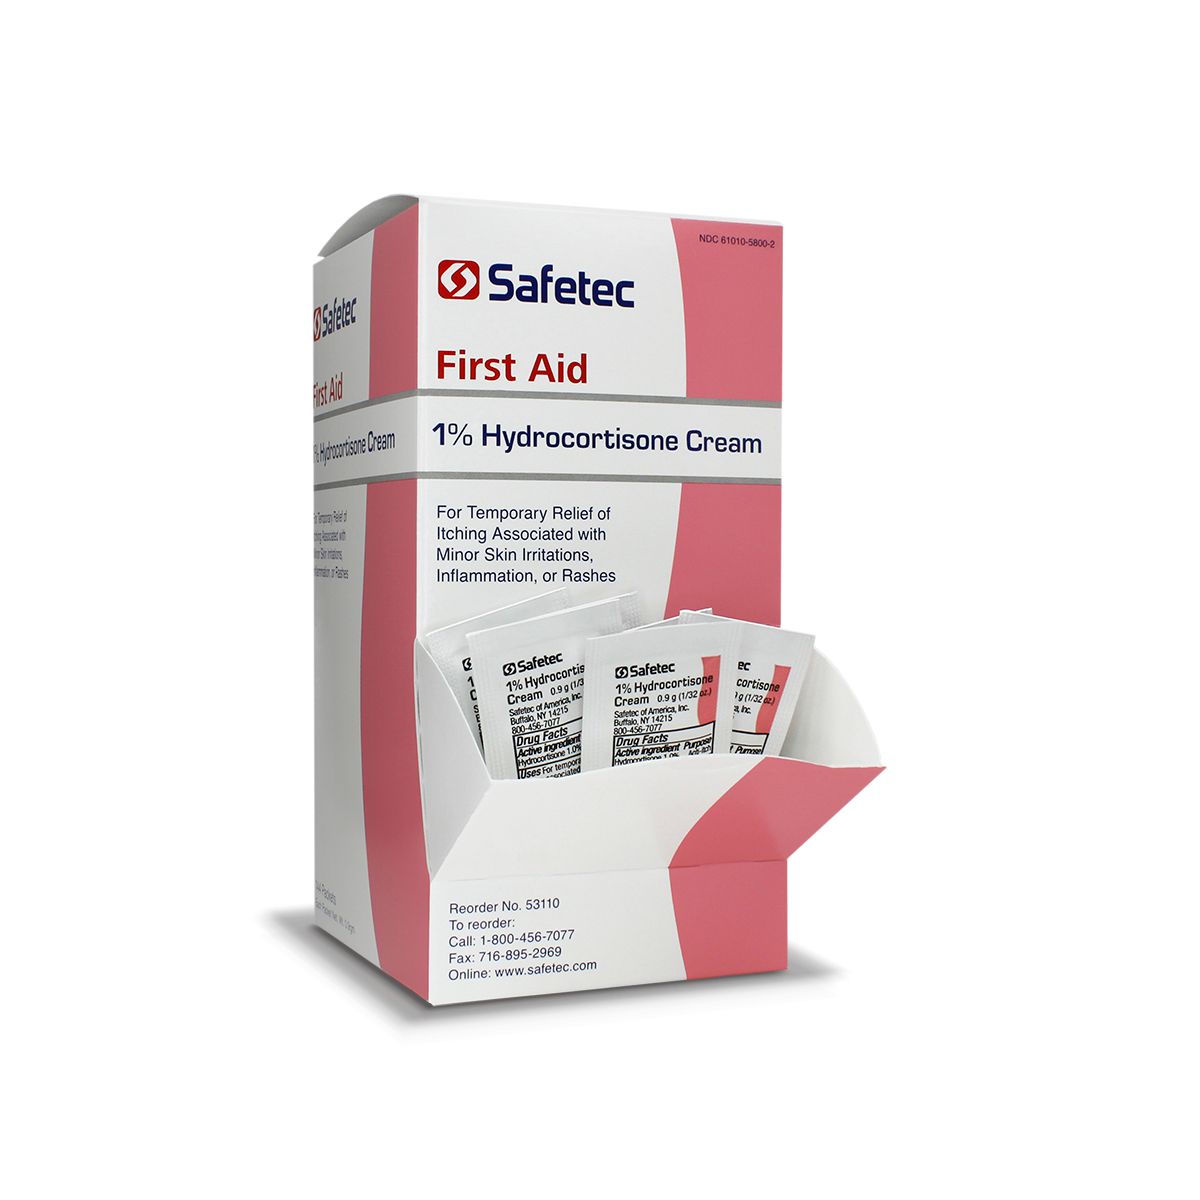 53104 Safetec®散装氢化可的松面霜(1%)箔包(。9克)